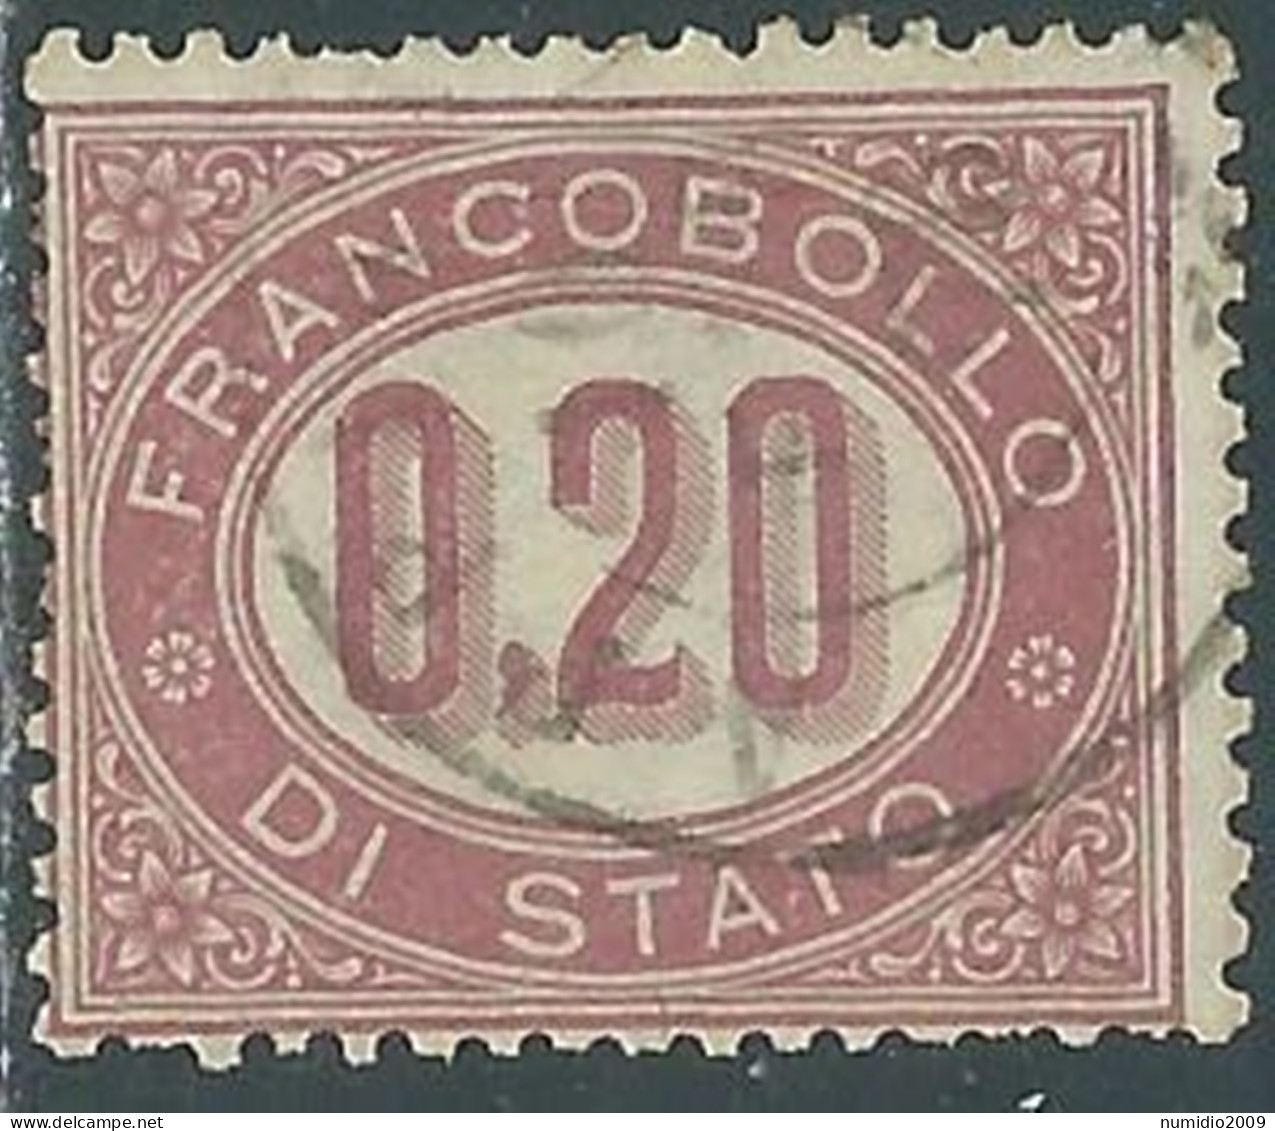 1875 REGNO SERVIZIO DI STATO USATO 20 CENT - P12-2 - Dienstzegels